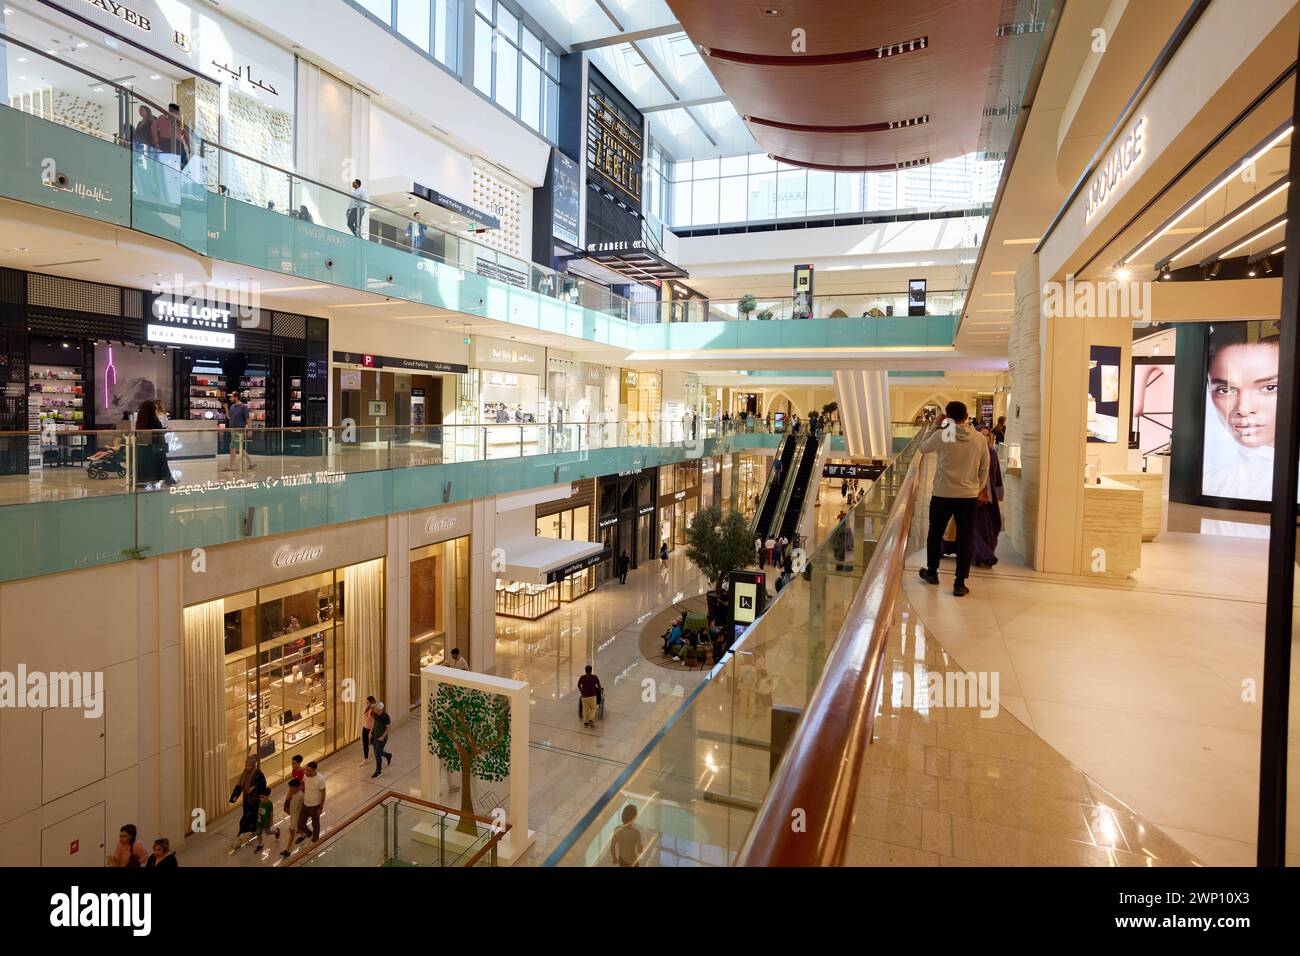 Das Einkaufszentrum Dubai Mall. Die größte Mall der Welt bietet unzählige Shopping- und Entertainmentmöglichkeiten Dubai *** The Dubai Mall The largest mall in the world offers countless shopping and entertainment options Dubai DSC03683.jpg Stock Photo